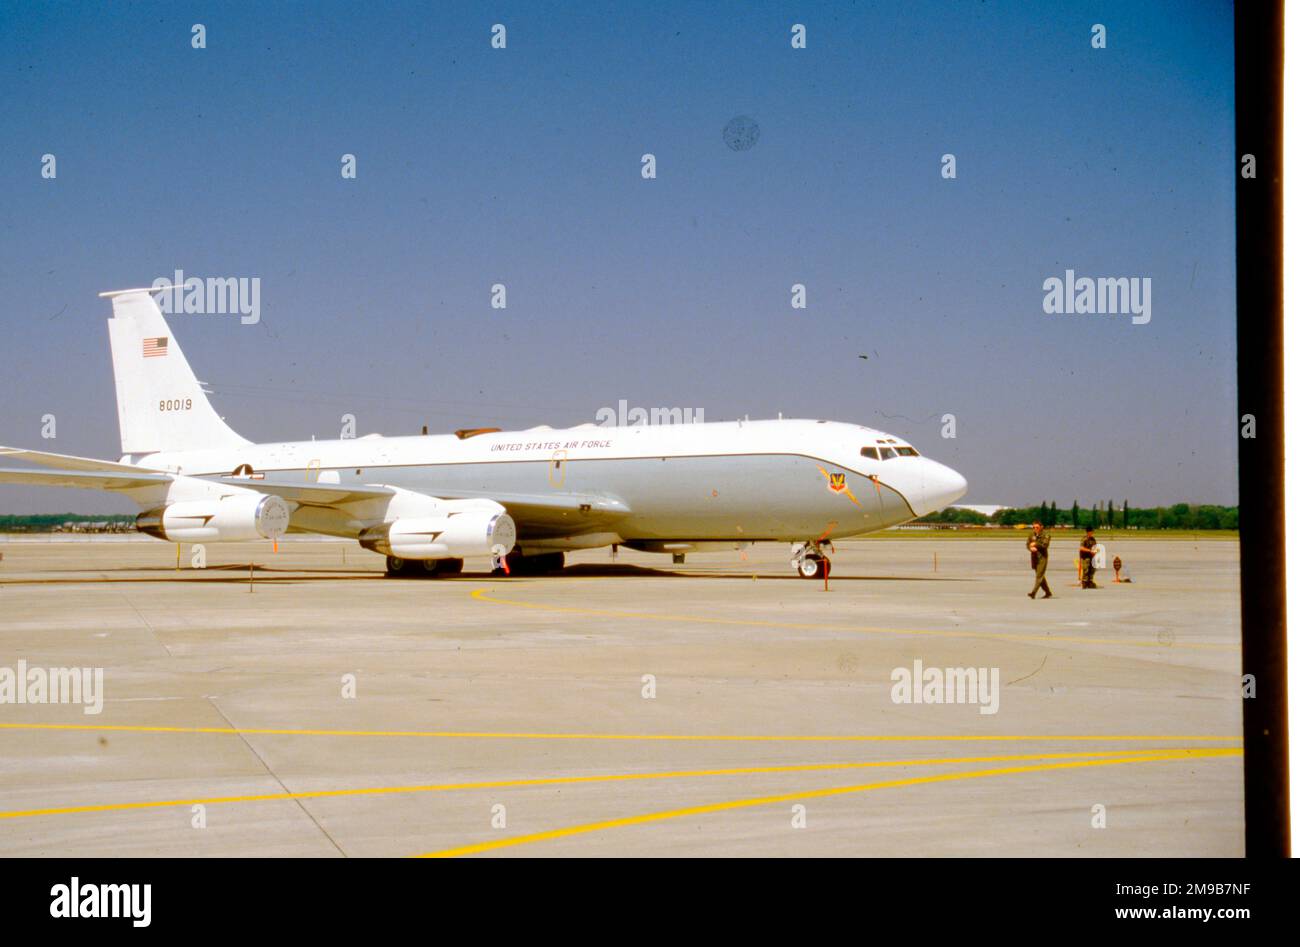 United States Air Force (USAF) - Boeing EC-135P 58-0019 (msn 17764) (inizialmente convertito in aereo di collegamento radio EC-135A. Successivamente convertito al posto di comando aereo EC-135P). Foto Stock